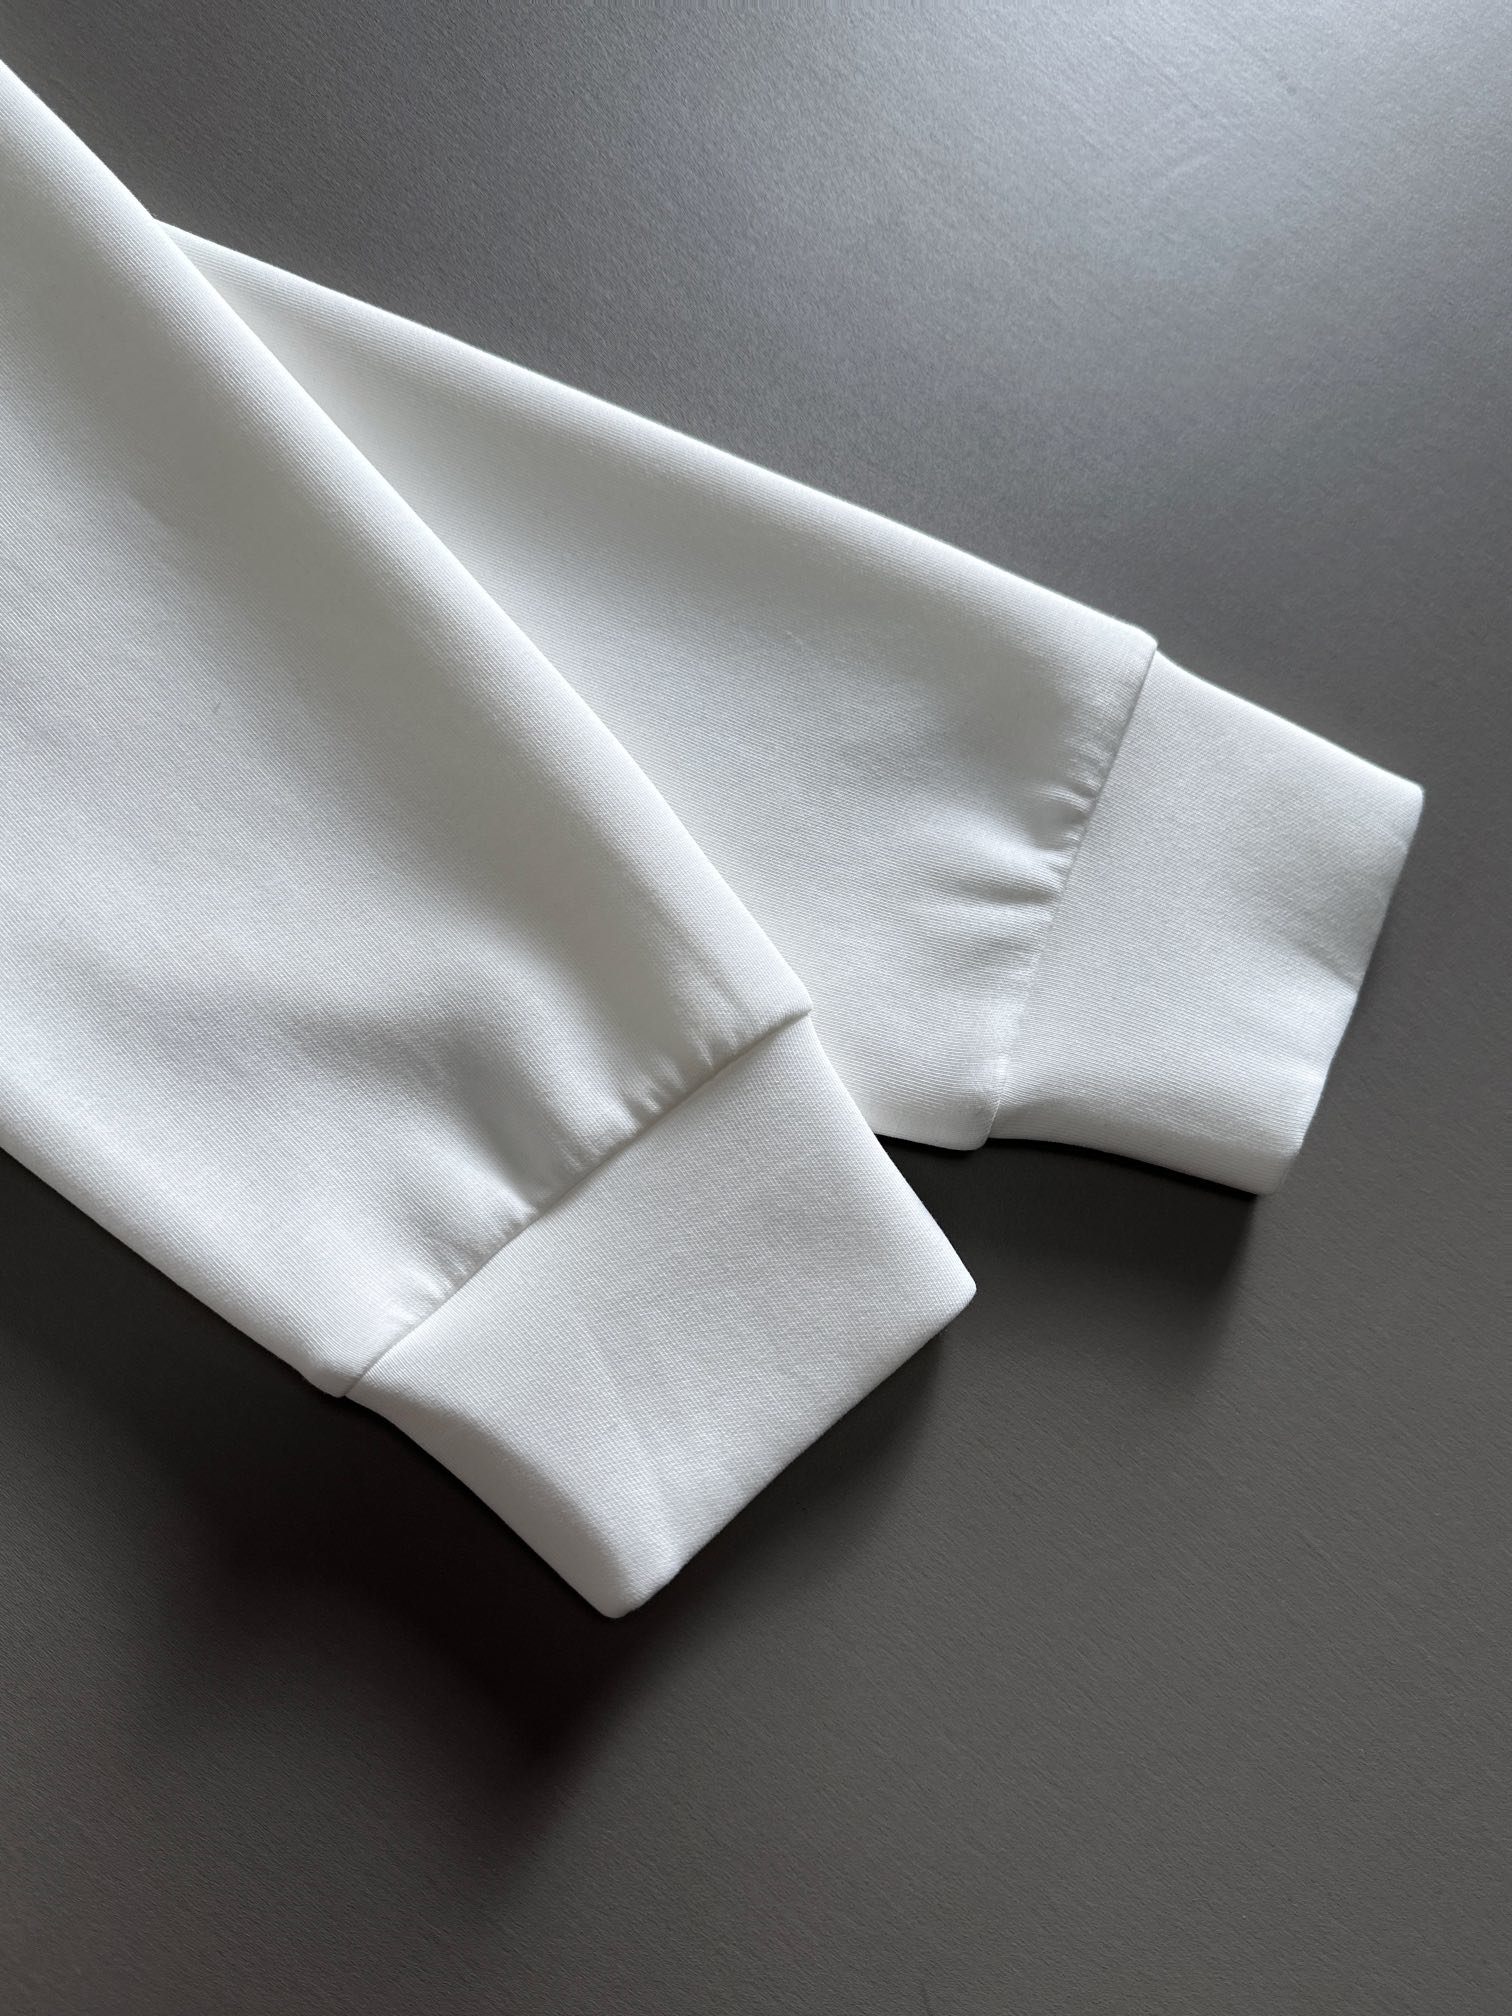 芬迪2023最新款太空棉卫衣独家发售！原版复刻独家设计超强工艺！极其奢华！版型超赞！尺码S-XL